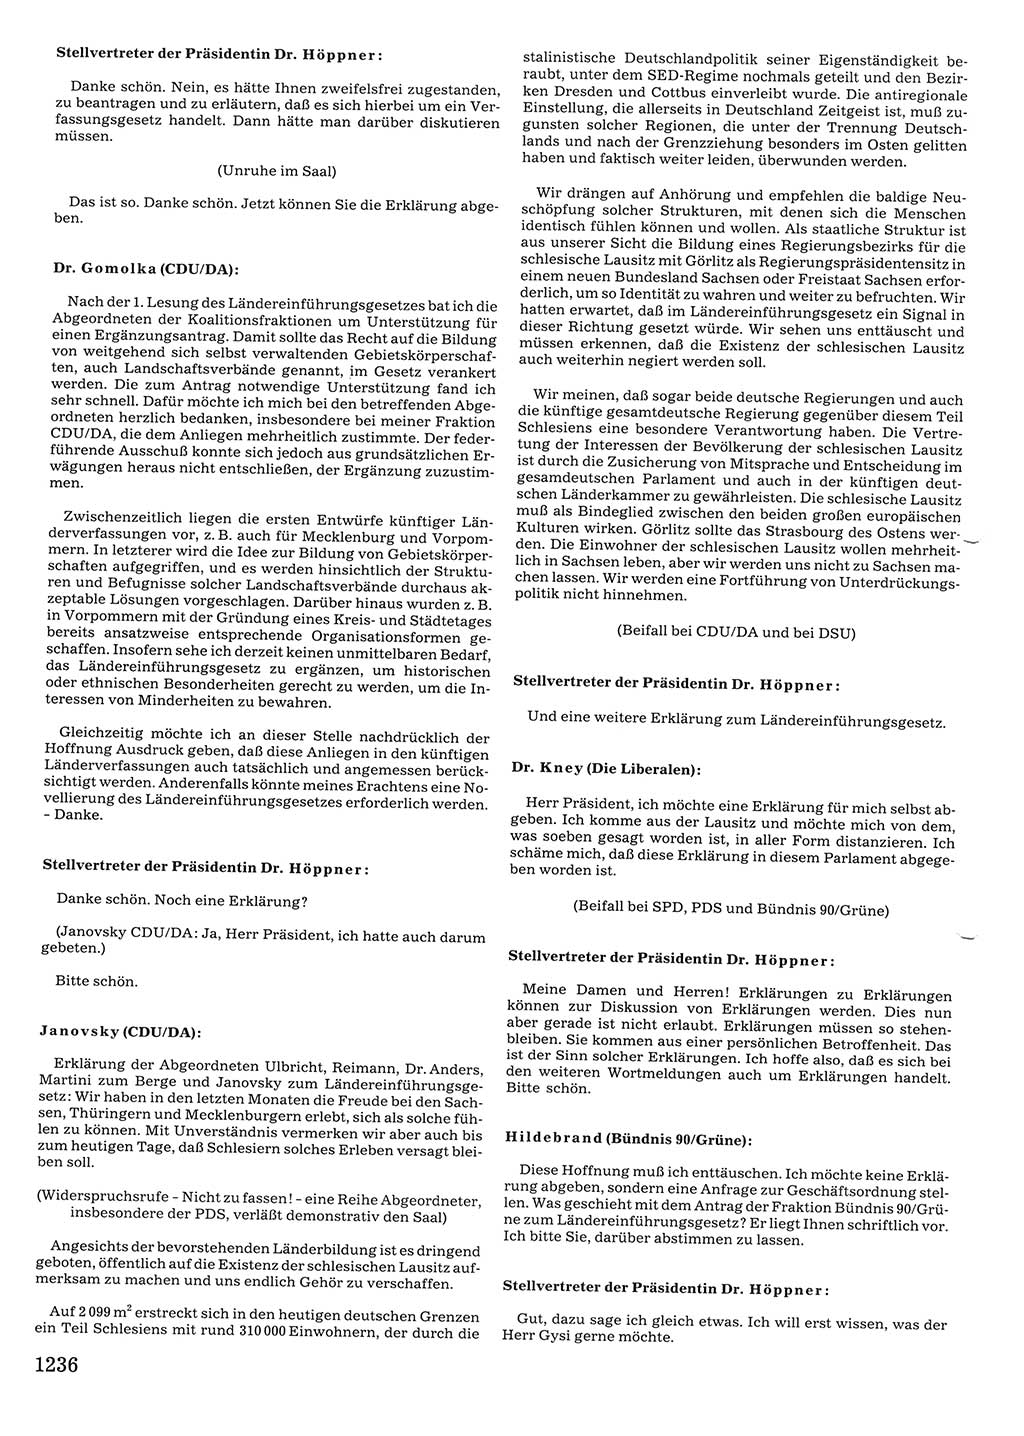 Tagungen der Volkskammer (VK) der Deutschen Demokratischen Republik (DDR), 10. Wahlperiode 1990, Seite 1236 (VK. DDR 10. WP. 1990, Prot. Tg. 1-38, 5.4.-2.10.1990, S. 1236)